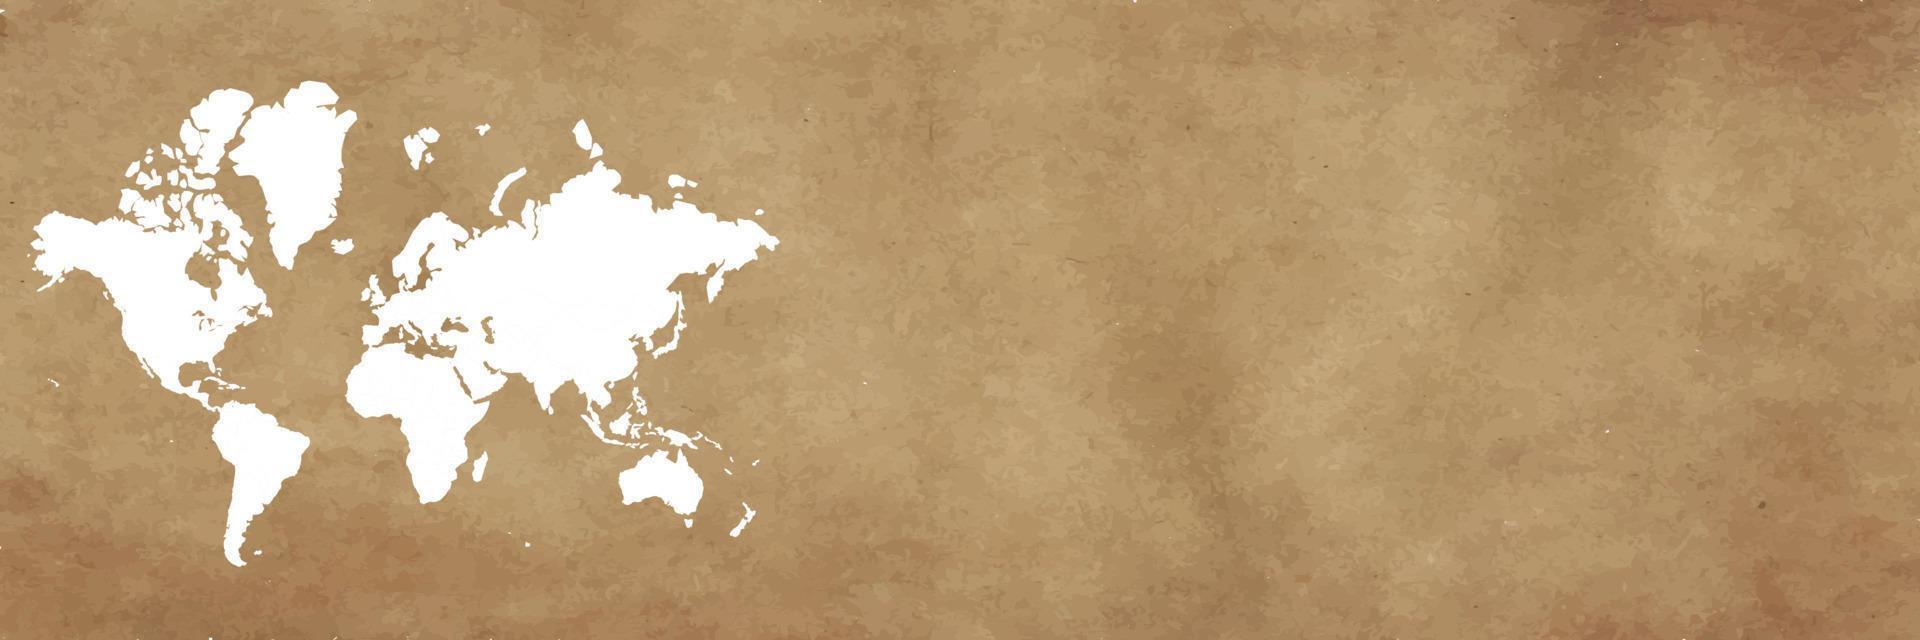 mapa do mundo no banner de fundo marrom vetor